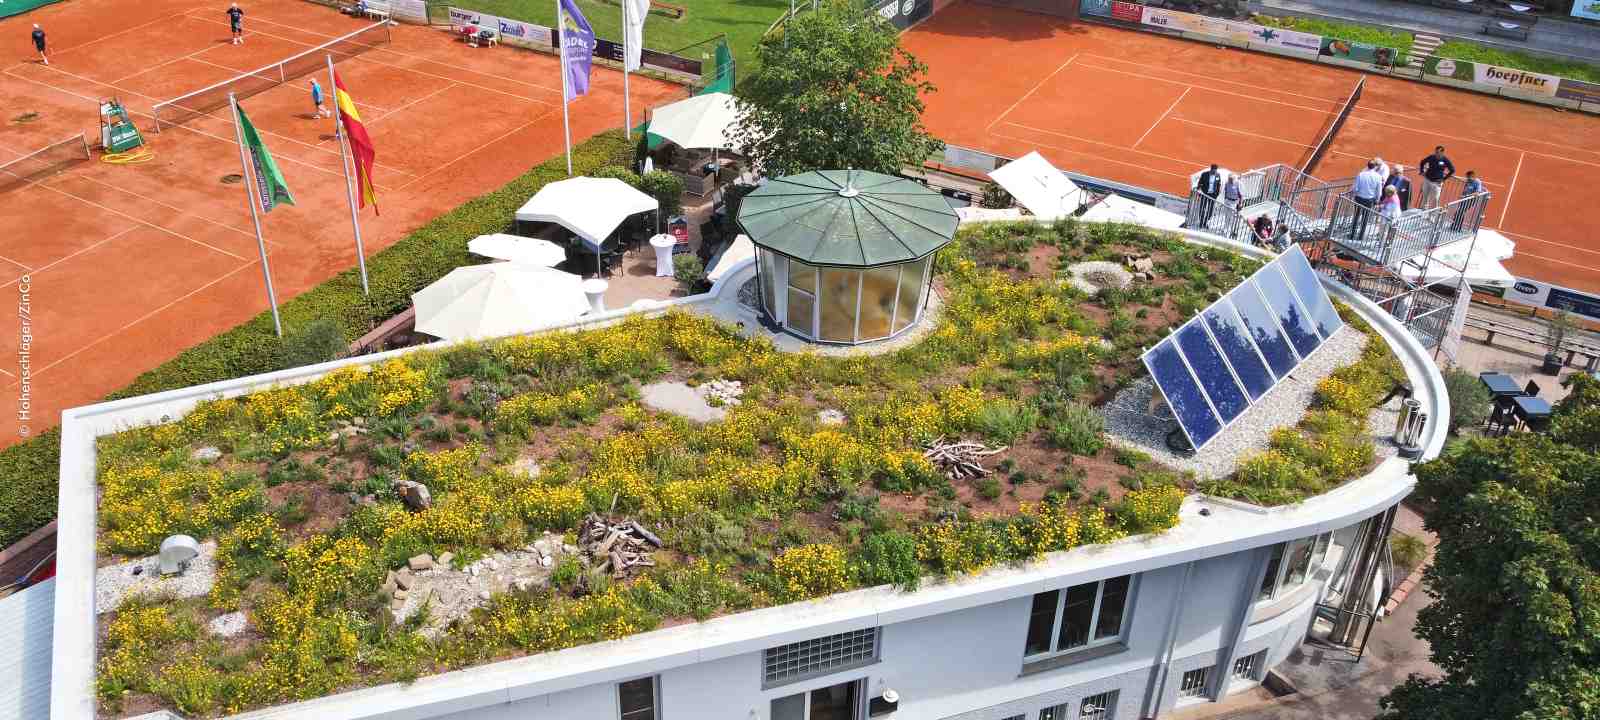 Tennisplatz mit begrüntem Gebäude